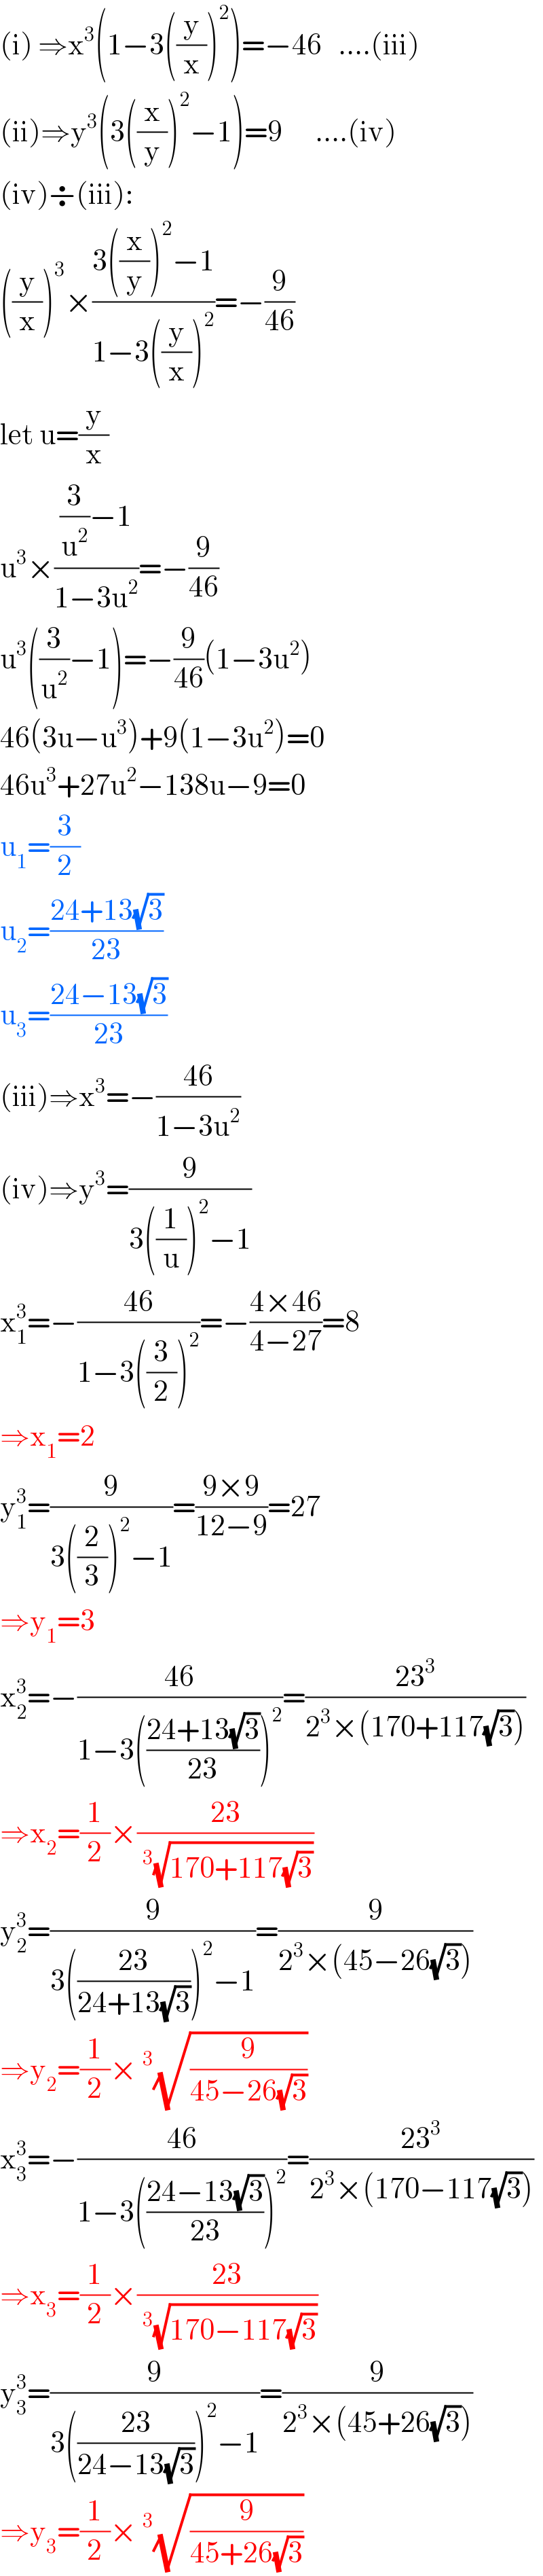 (i) ⇒x^3 (1−3((y/x))^2 )=−46   ....(iii)  (ii)⇒y^3 (3((x/y))^2 −1)=9      ....(iv)  (iv)÷(iii):  ((y/x))^3 ×((3((x/y))^2 −1)/(1−3((y/x))^2 ))=−(9/(46))  let u=(y/x)  u^3 ×(((3/u^2 )−1)/(1−3u^2 ))=−(9/(46))  u^3 ((3/u^2 )−1)=−(9/(46))(1−3u^2 )  46(3u−u^3 )+9(1−3u^2 )=0  46u^3 +27u^2 −138u−9=0  u_1 =(3/2)  u_2 =((24+13(√3))/(23))  u_3 =((24−13(√3))/(23))  (iii)⇒x^3 =−((46)/(1−3u^2 ))  (iv)⇒y^3 =(9/(3((1/u))^2 −1))  x_1 ^3 =−((46)/(1−3((3/2))^2 ))=−((4×46)/(4−27))=8  ⇒x_1 =2  y_1 ^3 =(9/(3((2/3))^2 −1))=((9×9)/(12−9))=27  ⇒y_1 =3  x_2 ^3 =−((46)/(1−3(((24+13(√3))/(23)))^2 ))=((23^3 )/(2^3 ×(170+117(√3))))  ⇒x_2 =(1/2)×((23)/(^3 (√(170+117(√3)))))  y_2 ^3 =(9/(3(((23)/(24+13(√3))))^2 −1))=(9/(2^3 ×(45−26(√3))))  ⇒y_2 =(1/2)×^3 (√(9/(45−26(√3))))  x_3 ^3 =−((46)/(1−3(((24−13(√3))/(23)))^2 ))=((23^3 )/(2^3 ×(170−117(√3))))  ⇒x_3 =(1/2)×((23)/(^3 (√(170−117(√3)))))  y_3 ^3 =(9/(3(((23)/(24−13(√3))))^2 −1))=(9/(2^3 ×(45+26(√3))))  ⇒y_3 =(1/2)×^3 (√(9/(45+26(√3))))  